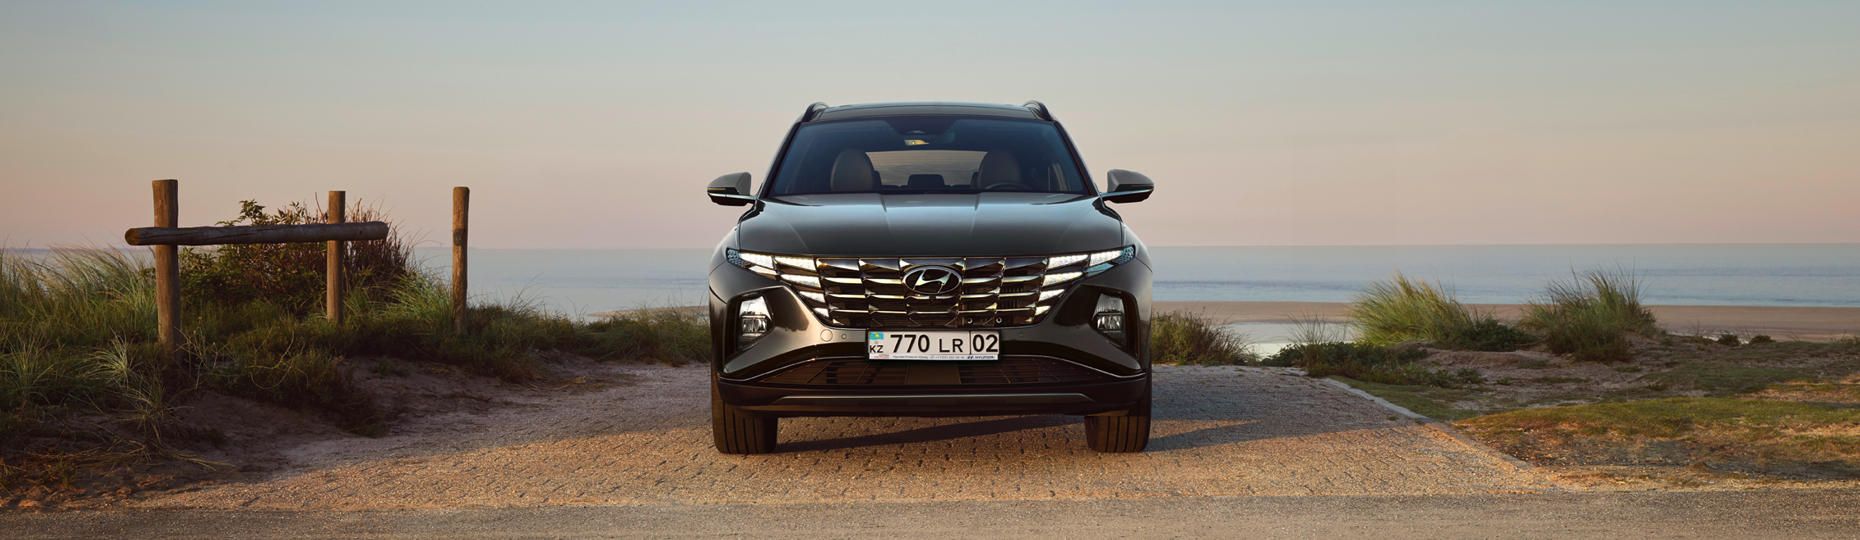 Производительность нового Hyundai Tucson | Официальный дилер в Алматы